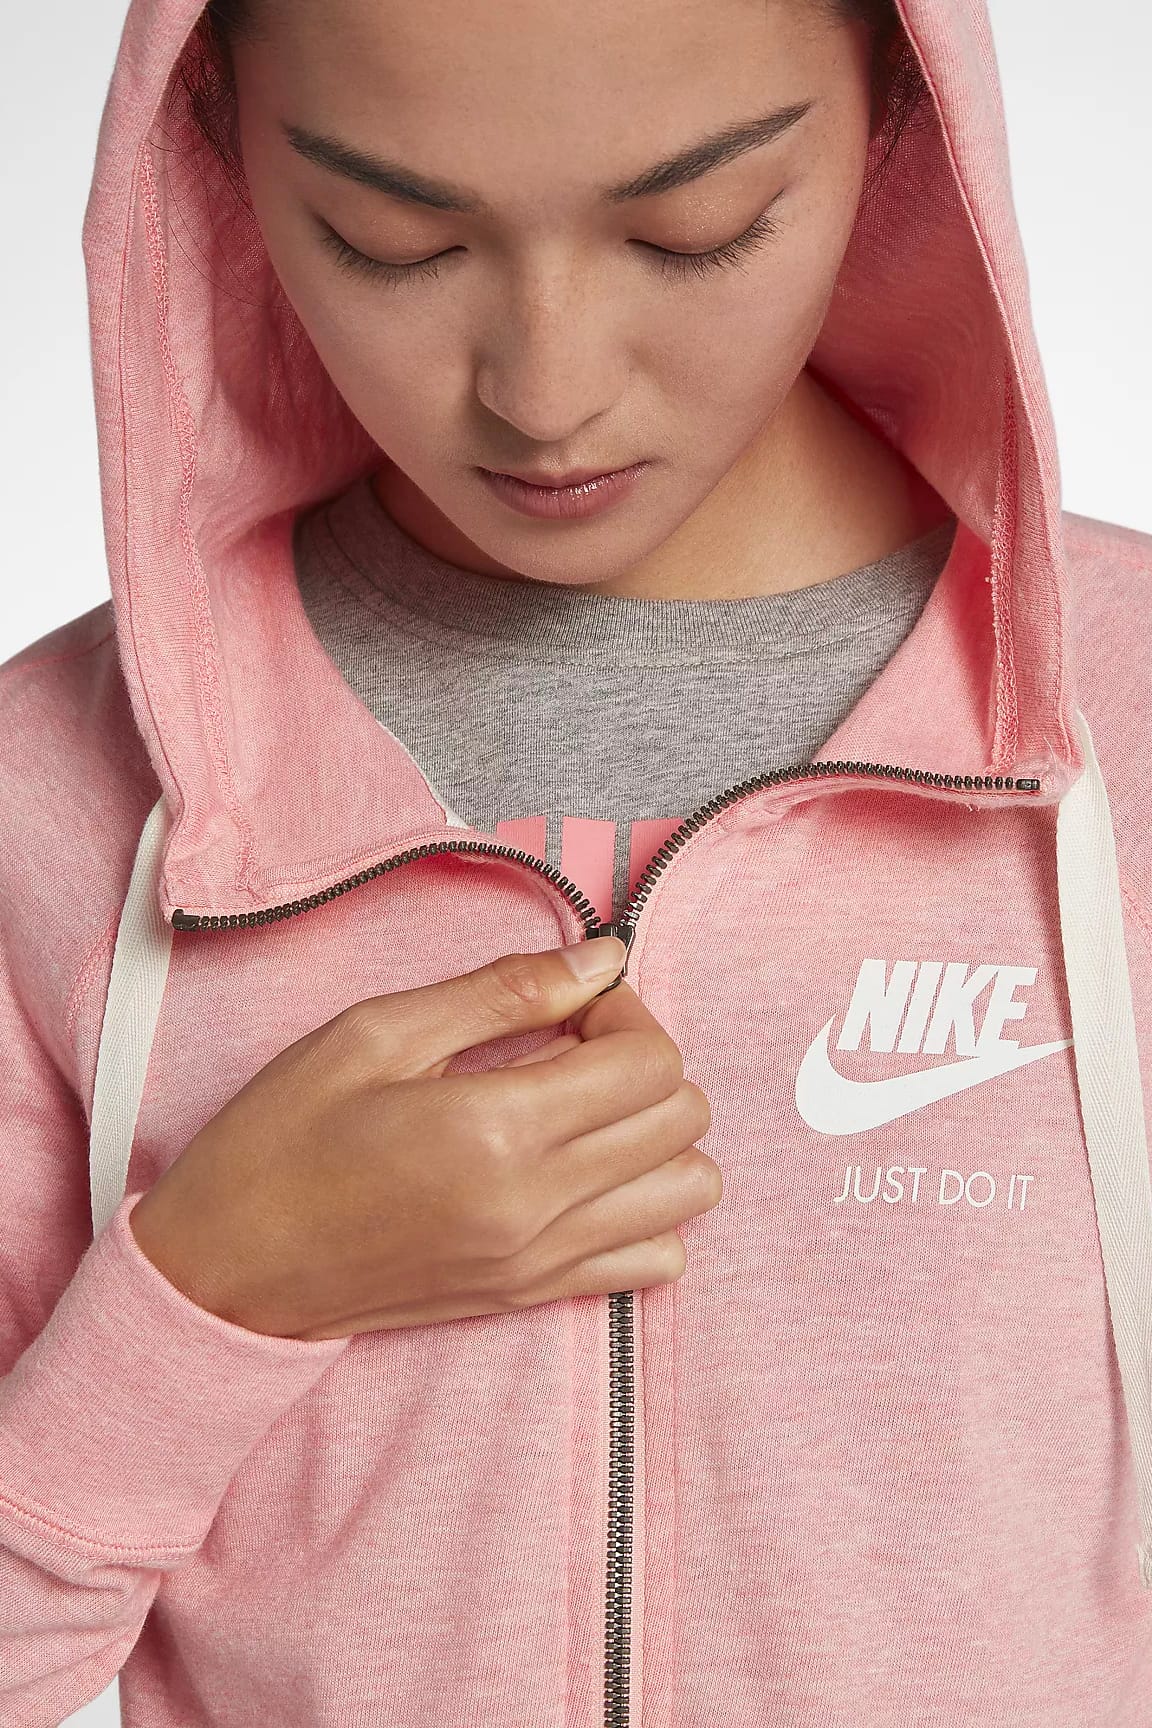 pink nike hoodie zip up